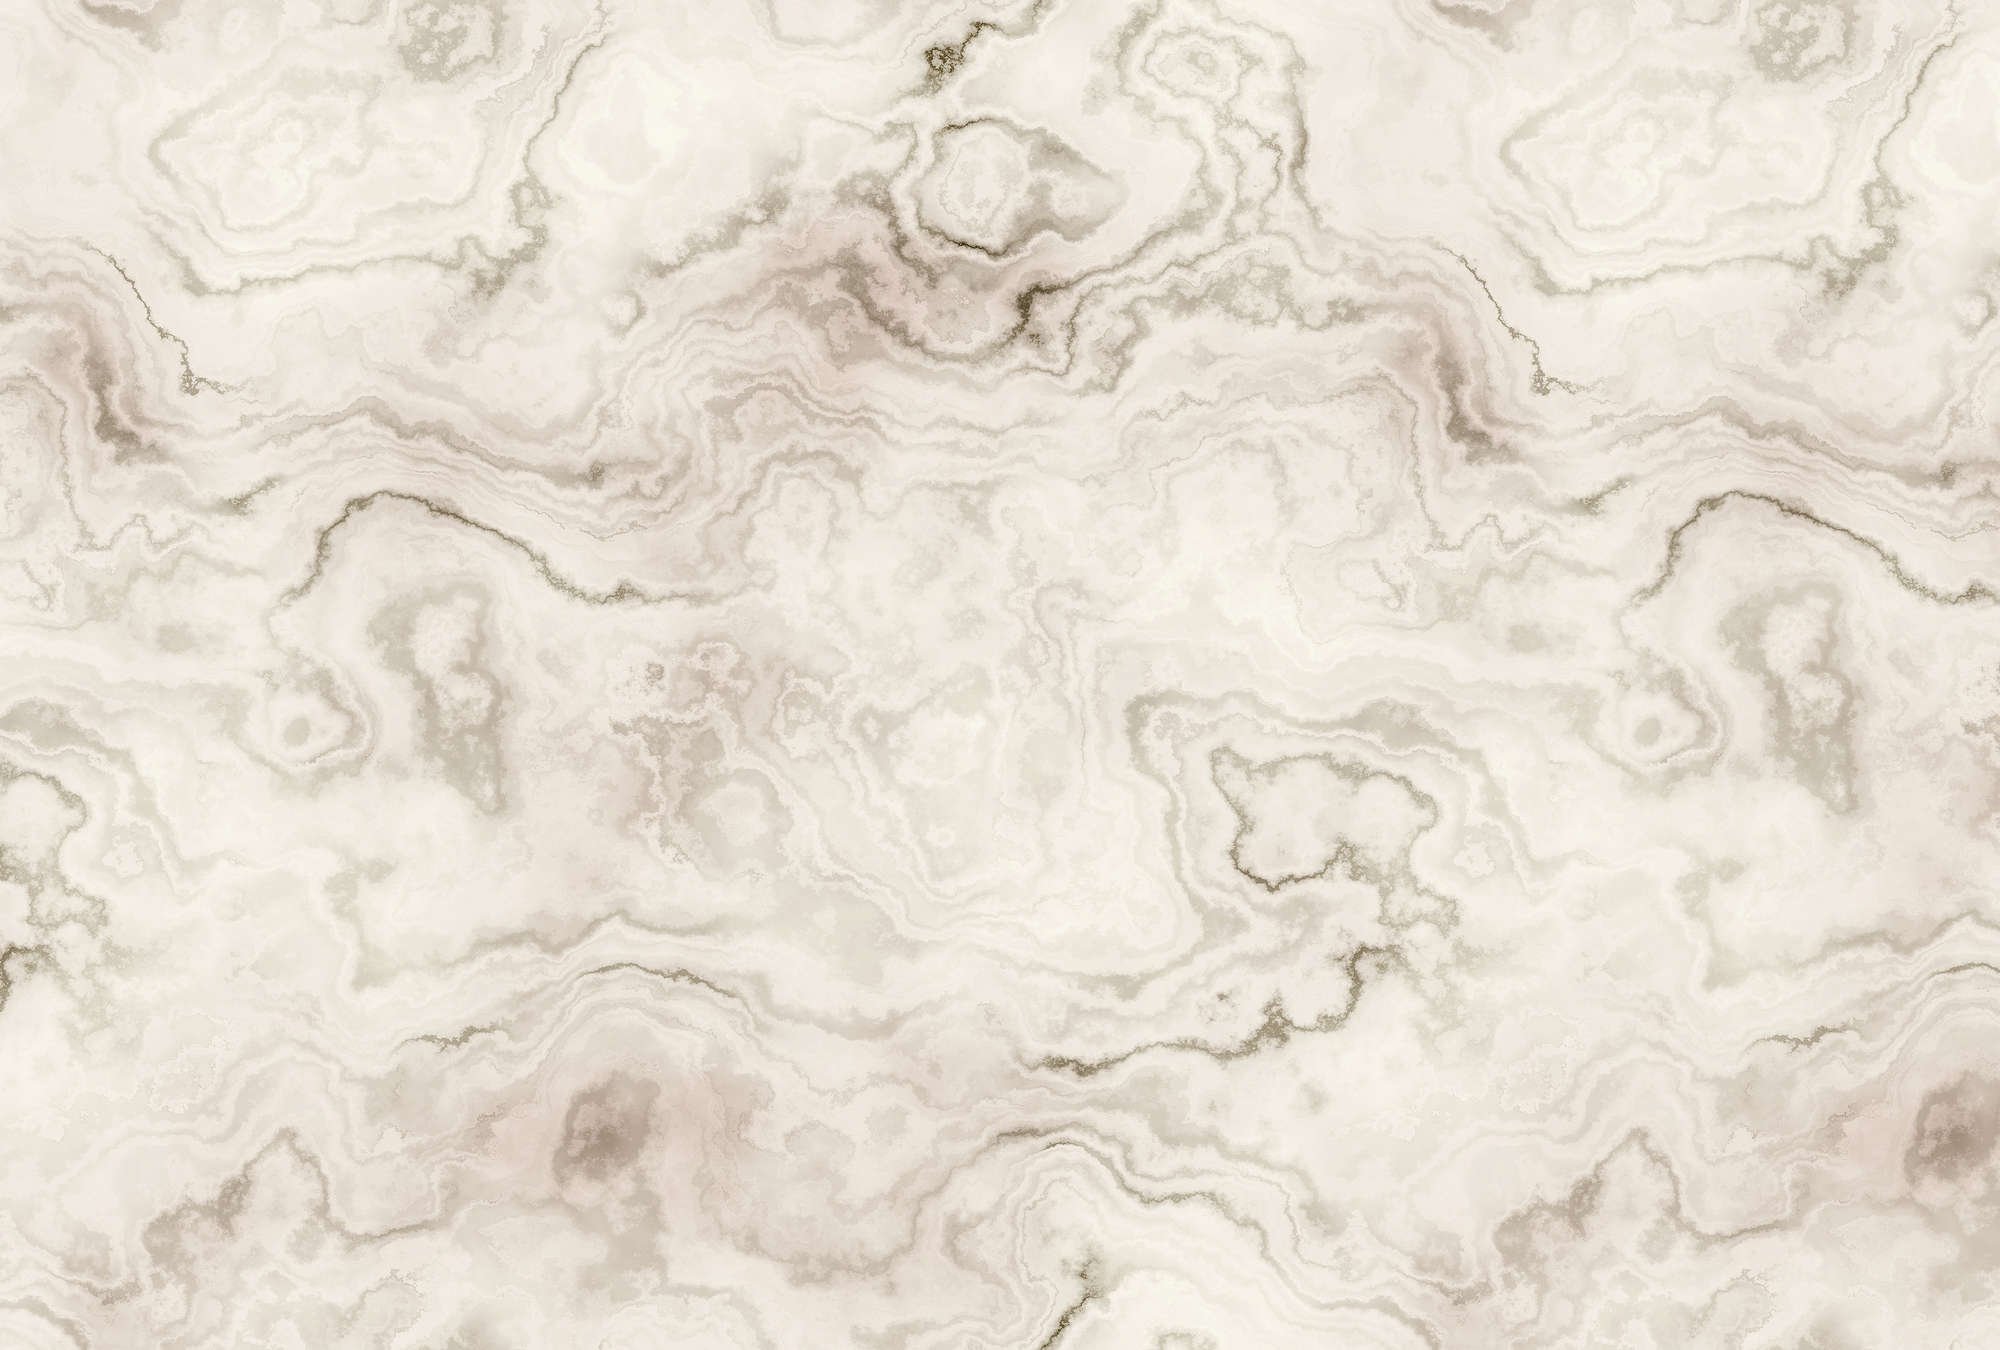             Carrara 2 - Papel pintado elegante efecto mármol - Beige, Marrón | Tela no tejida lisa de alta calidad
        